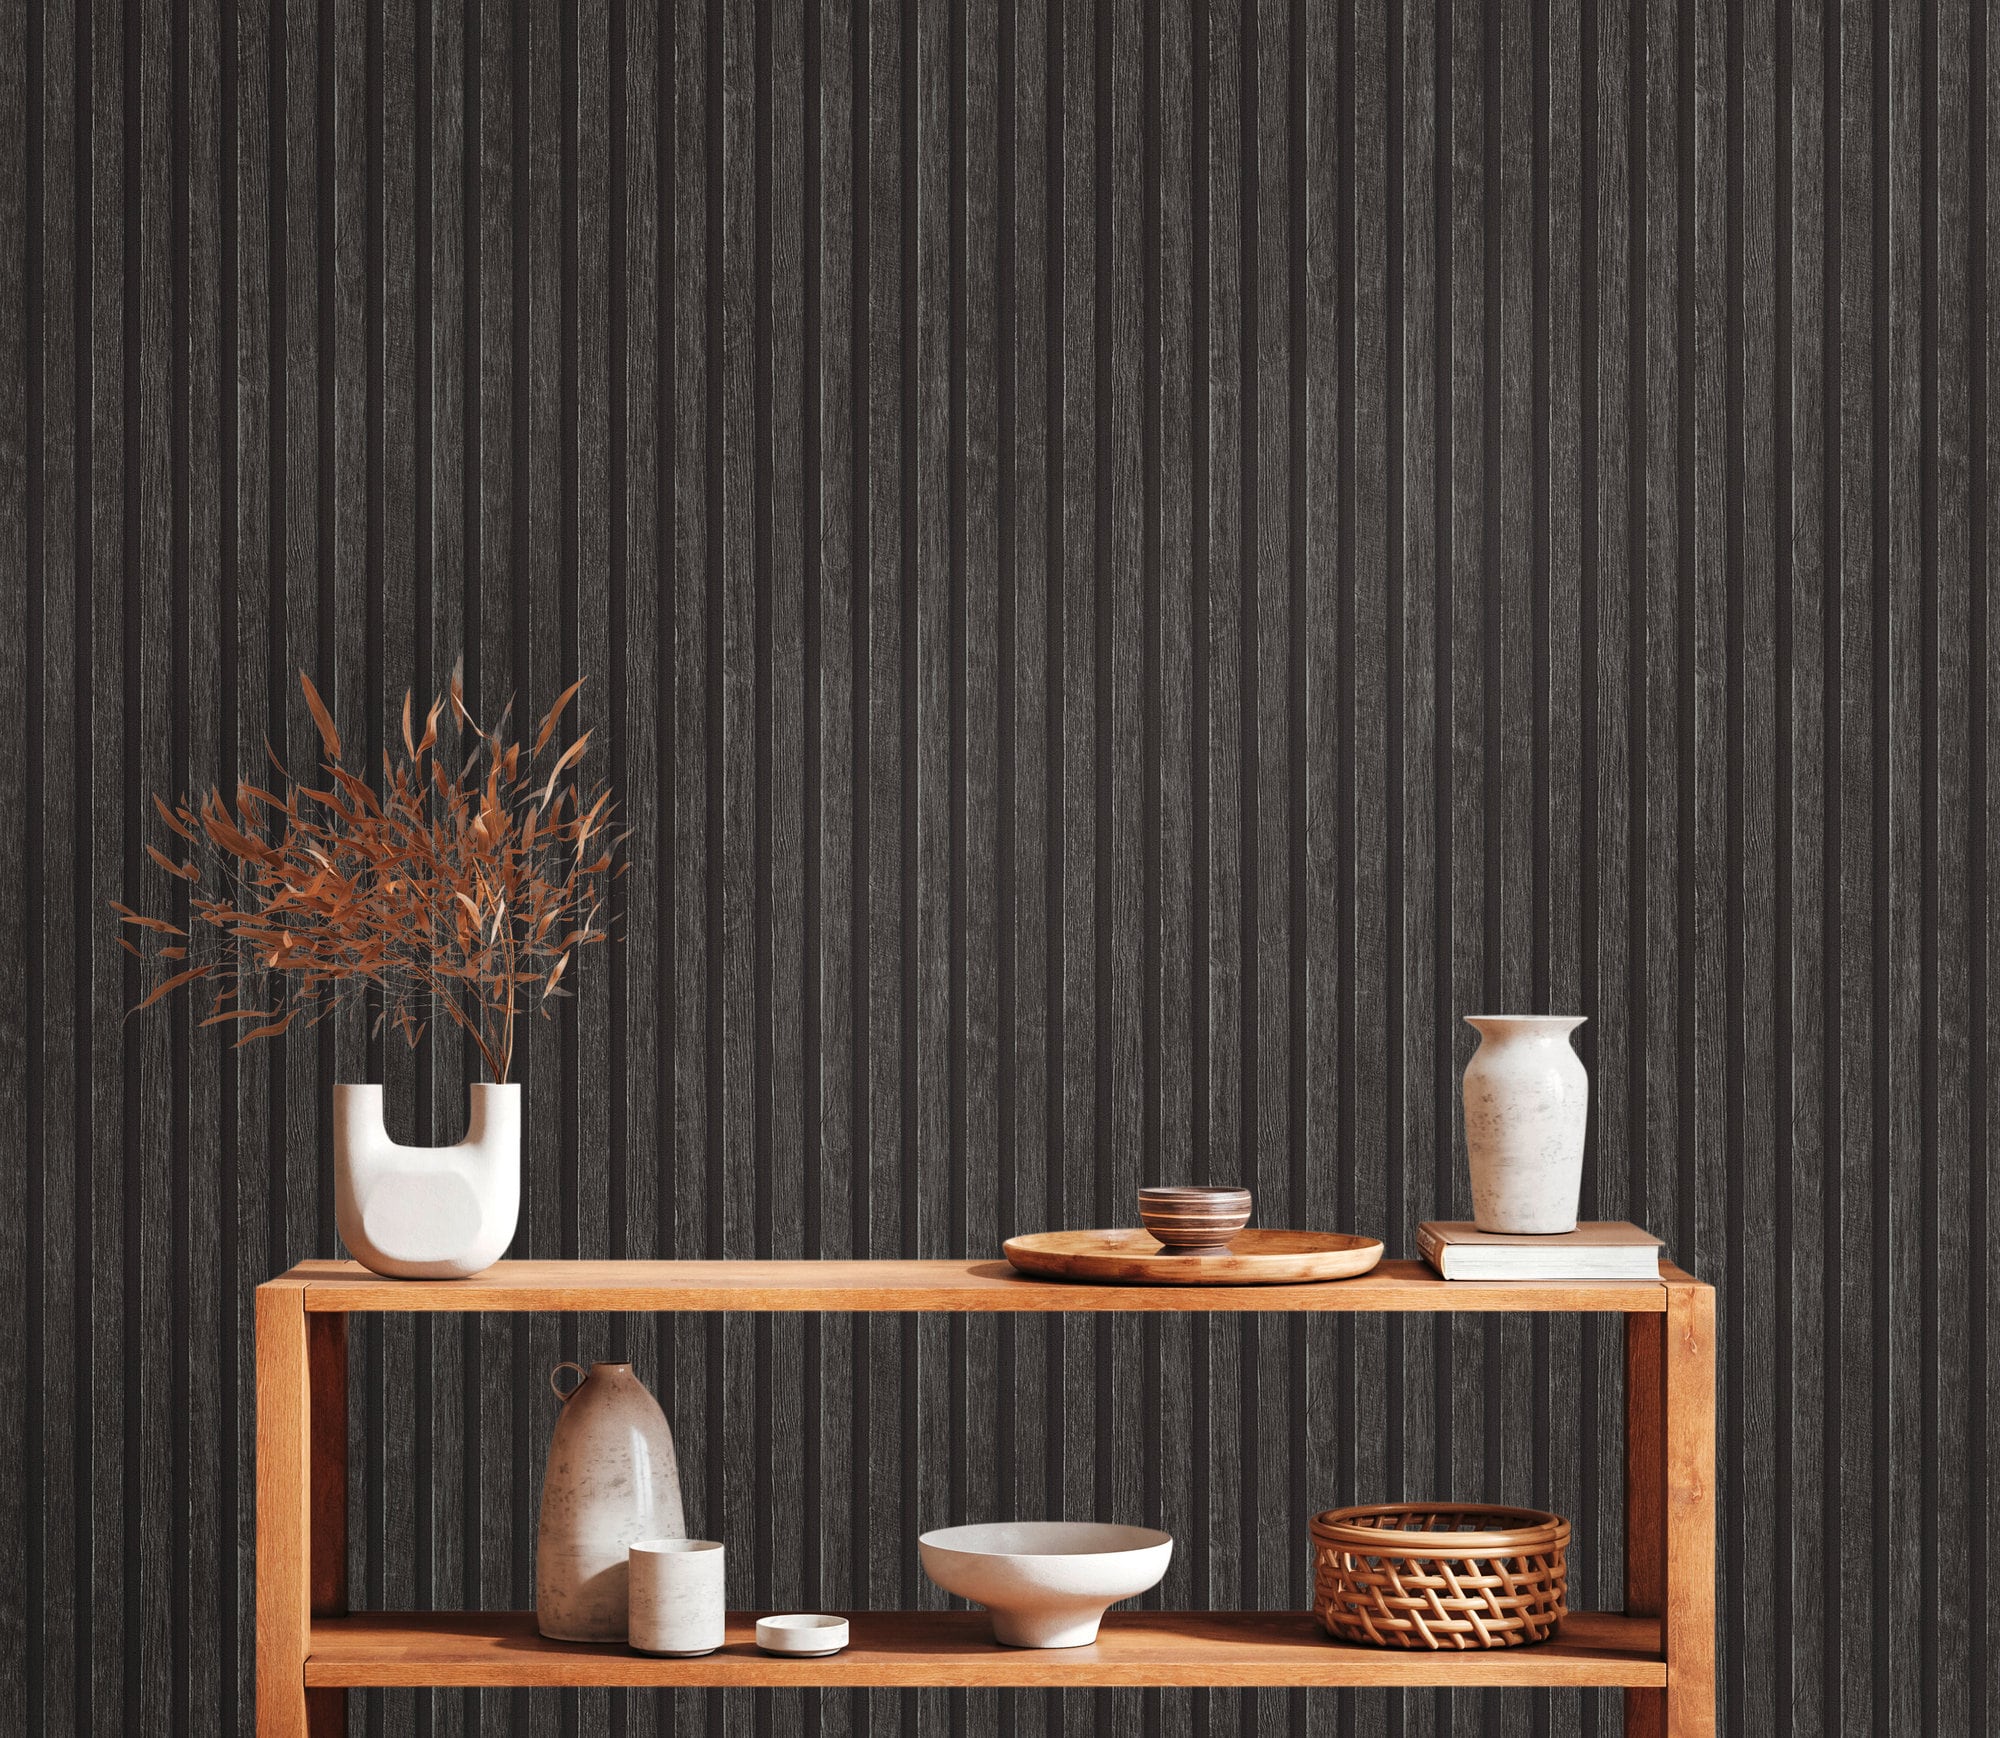 Papel pintado 3D paneles de aspecto de madera papel pintado no tejido  paneles de madera escandinavos papel pintado de pared moderno listones  pared de madera madera natural marrón beige gris negro -  México